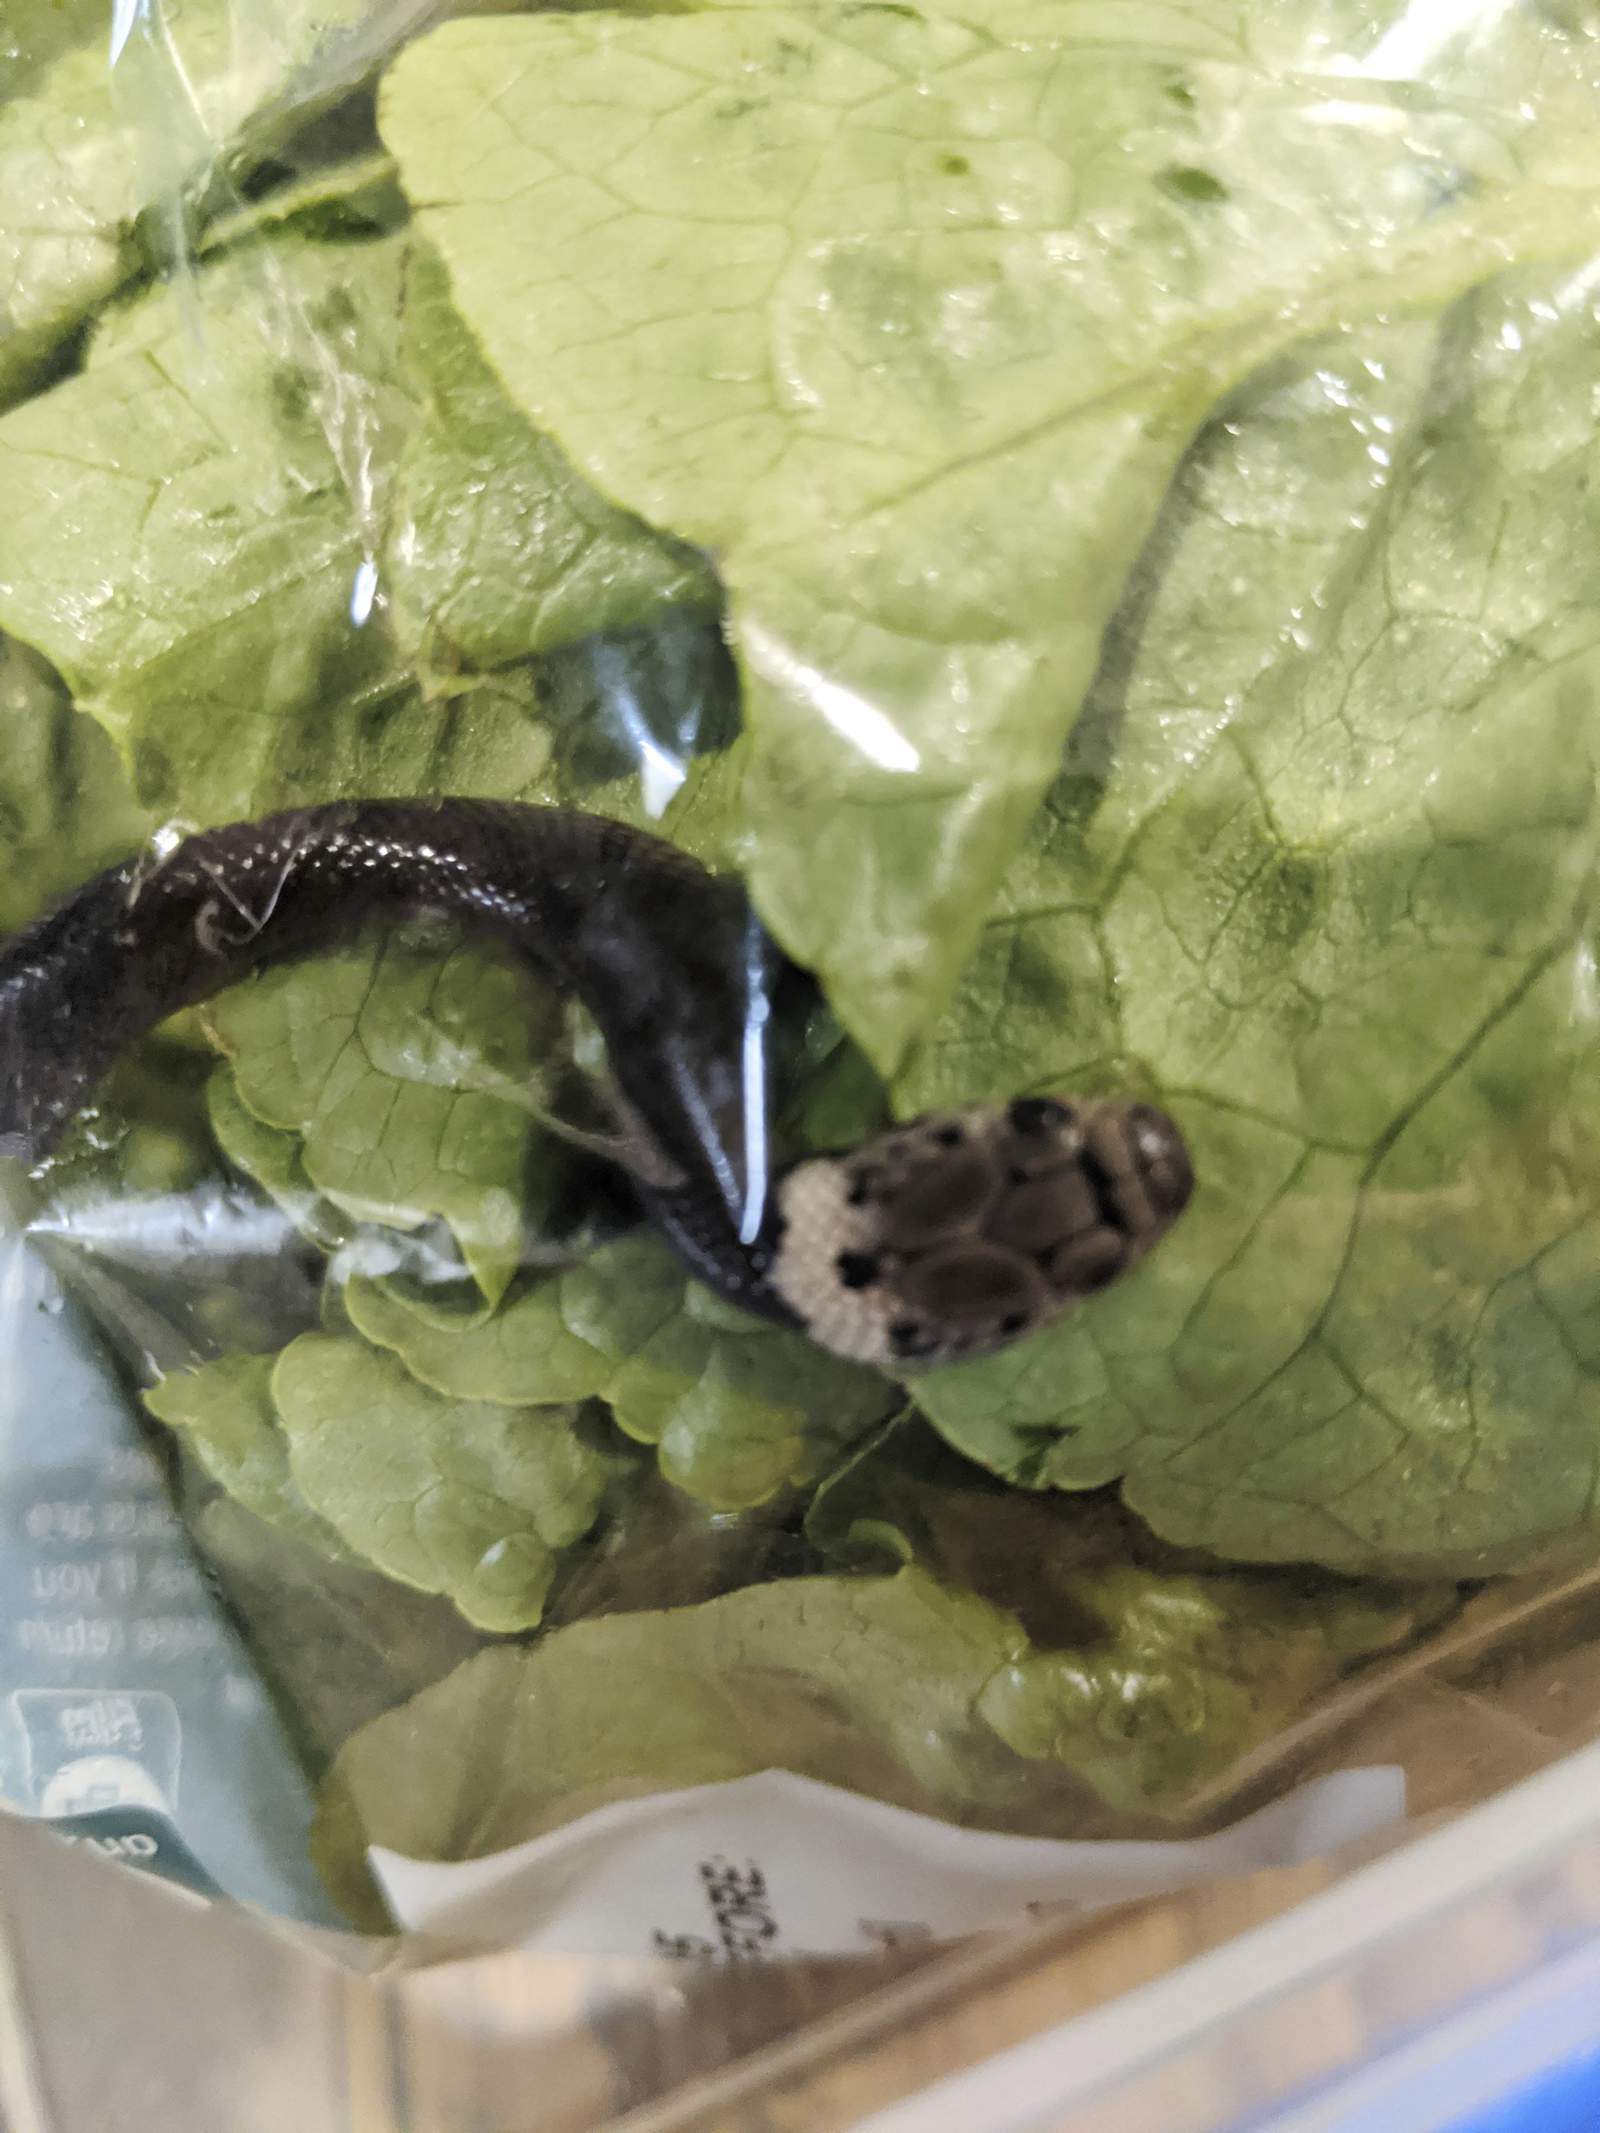 Sydney man finds snake in lettuce bought at supermarket